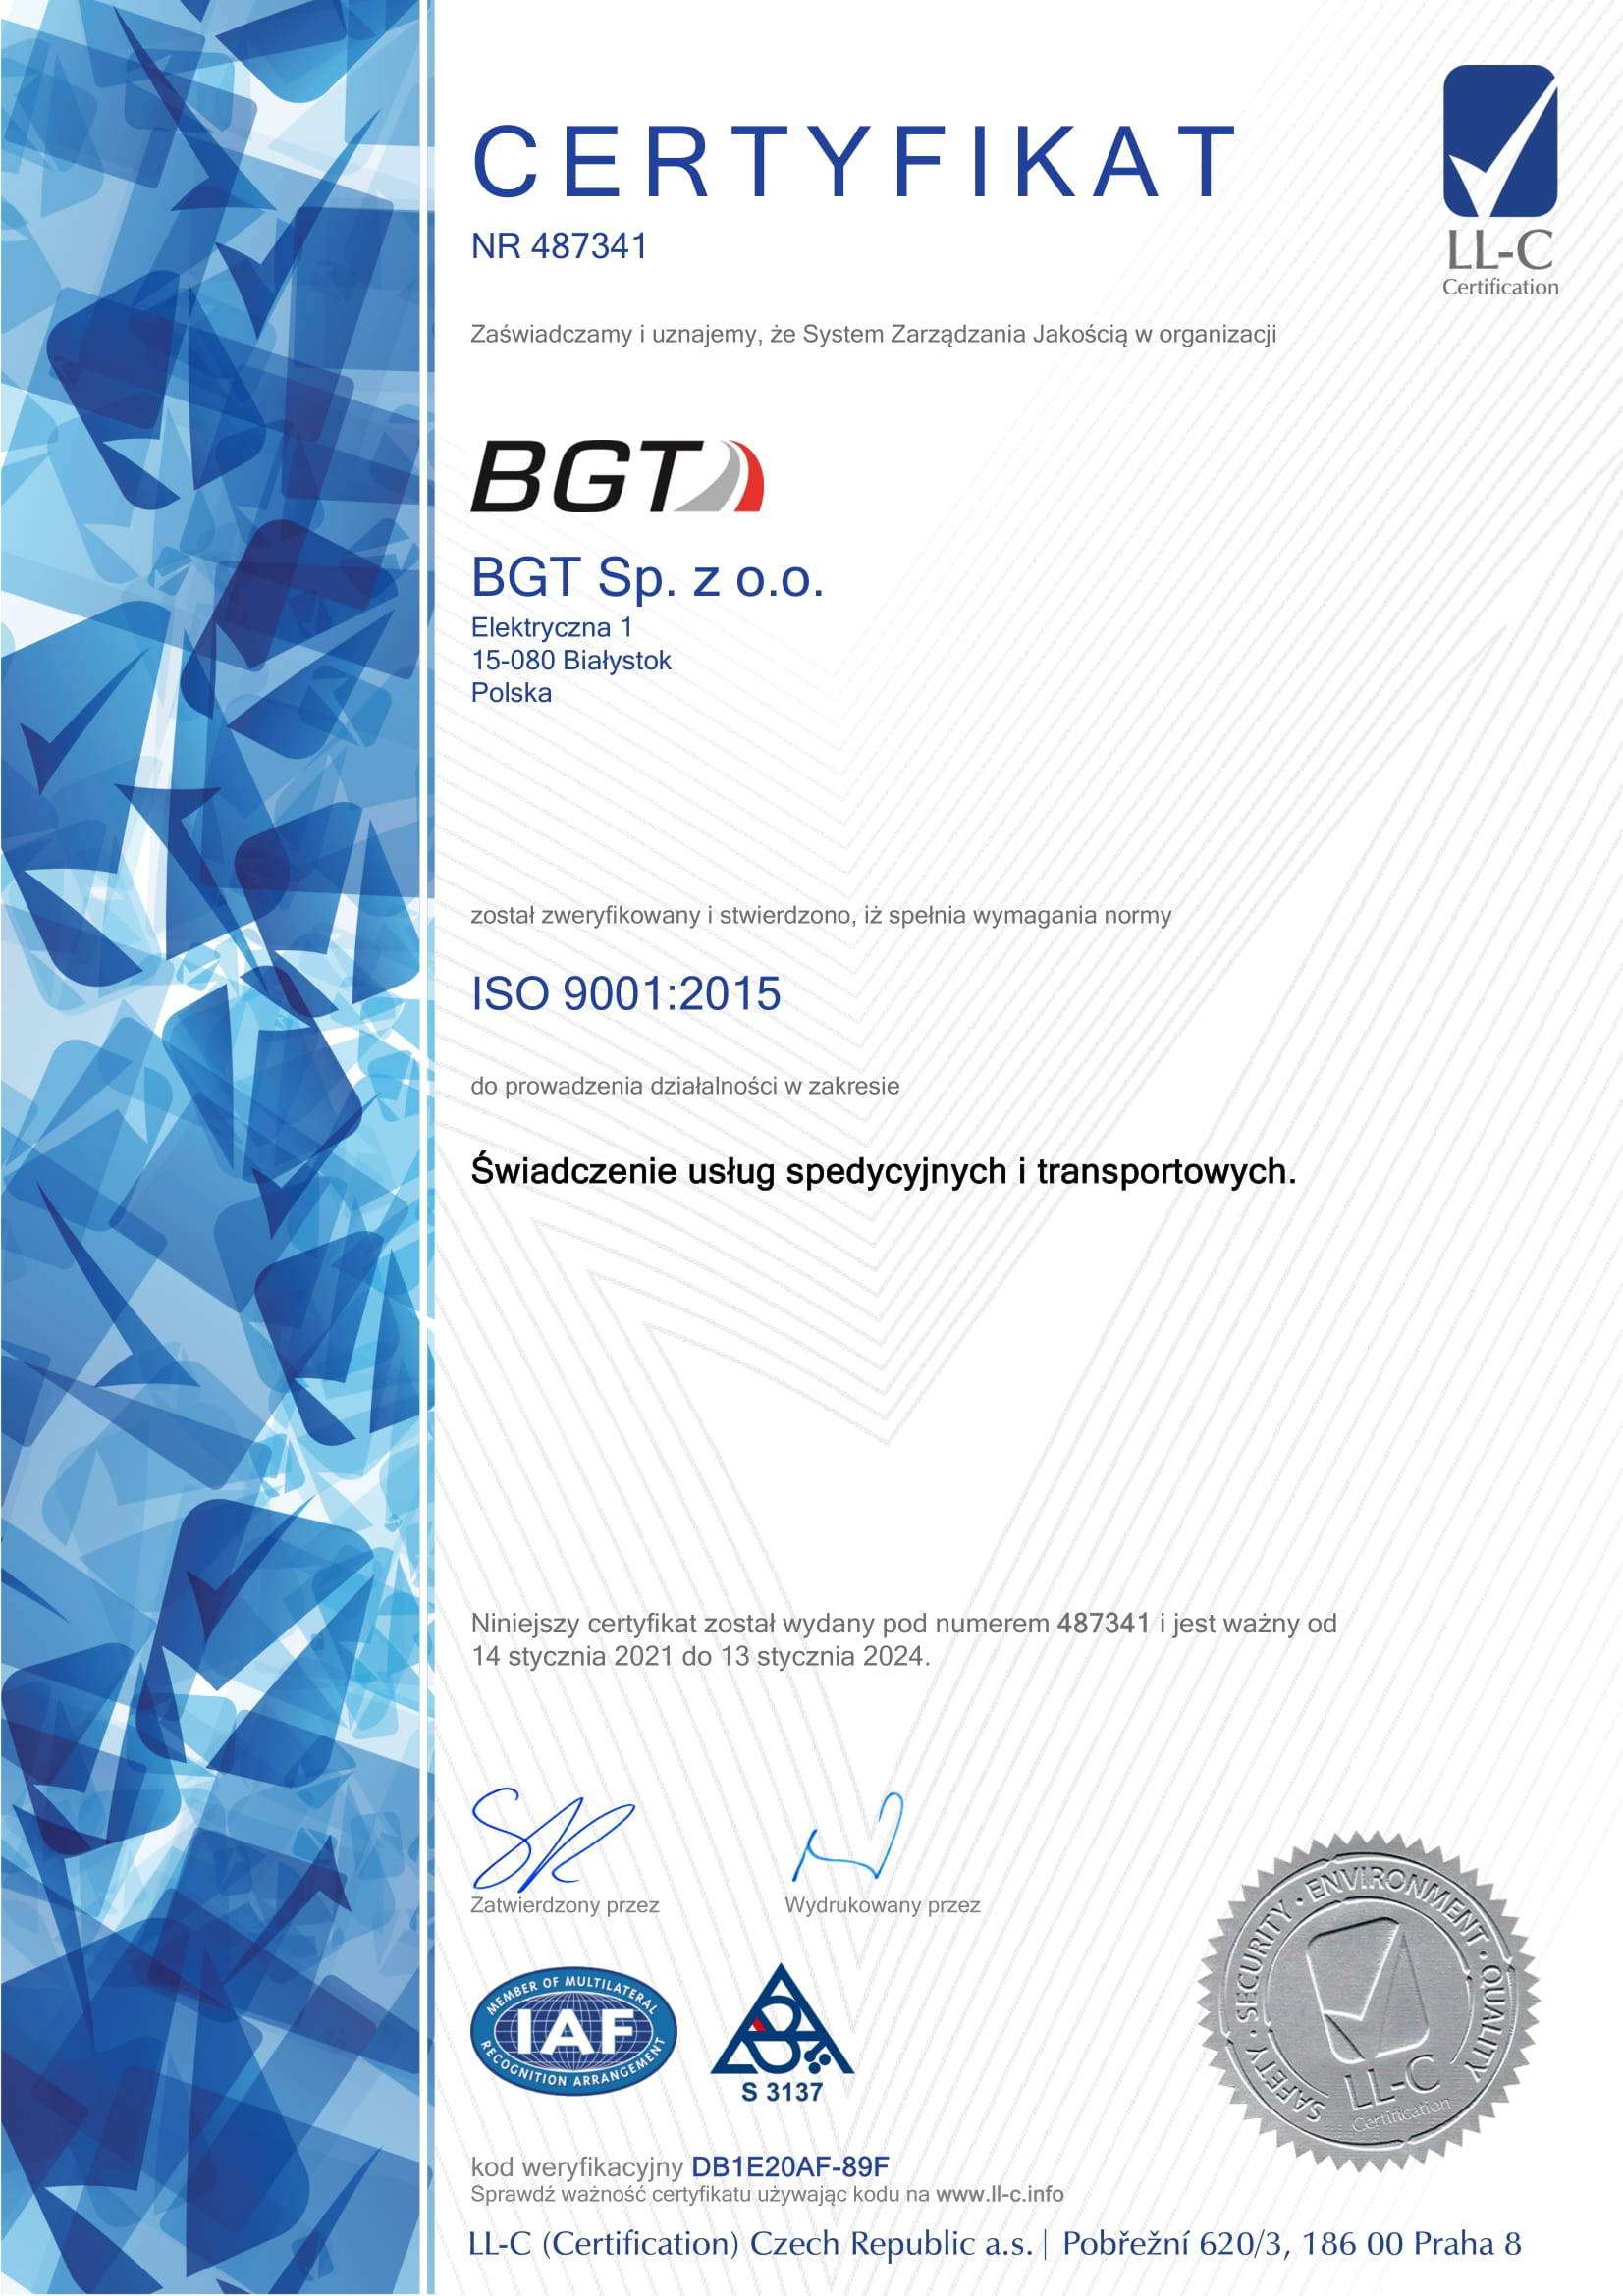 BGT сертификат iso 9001